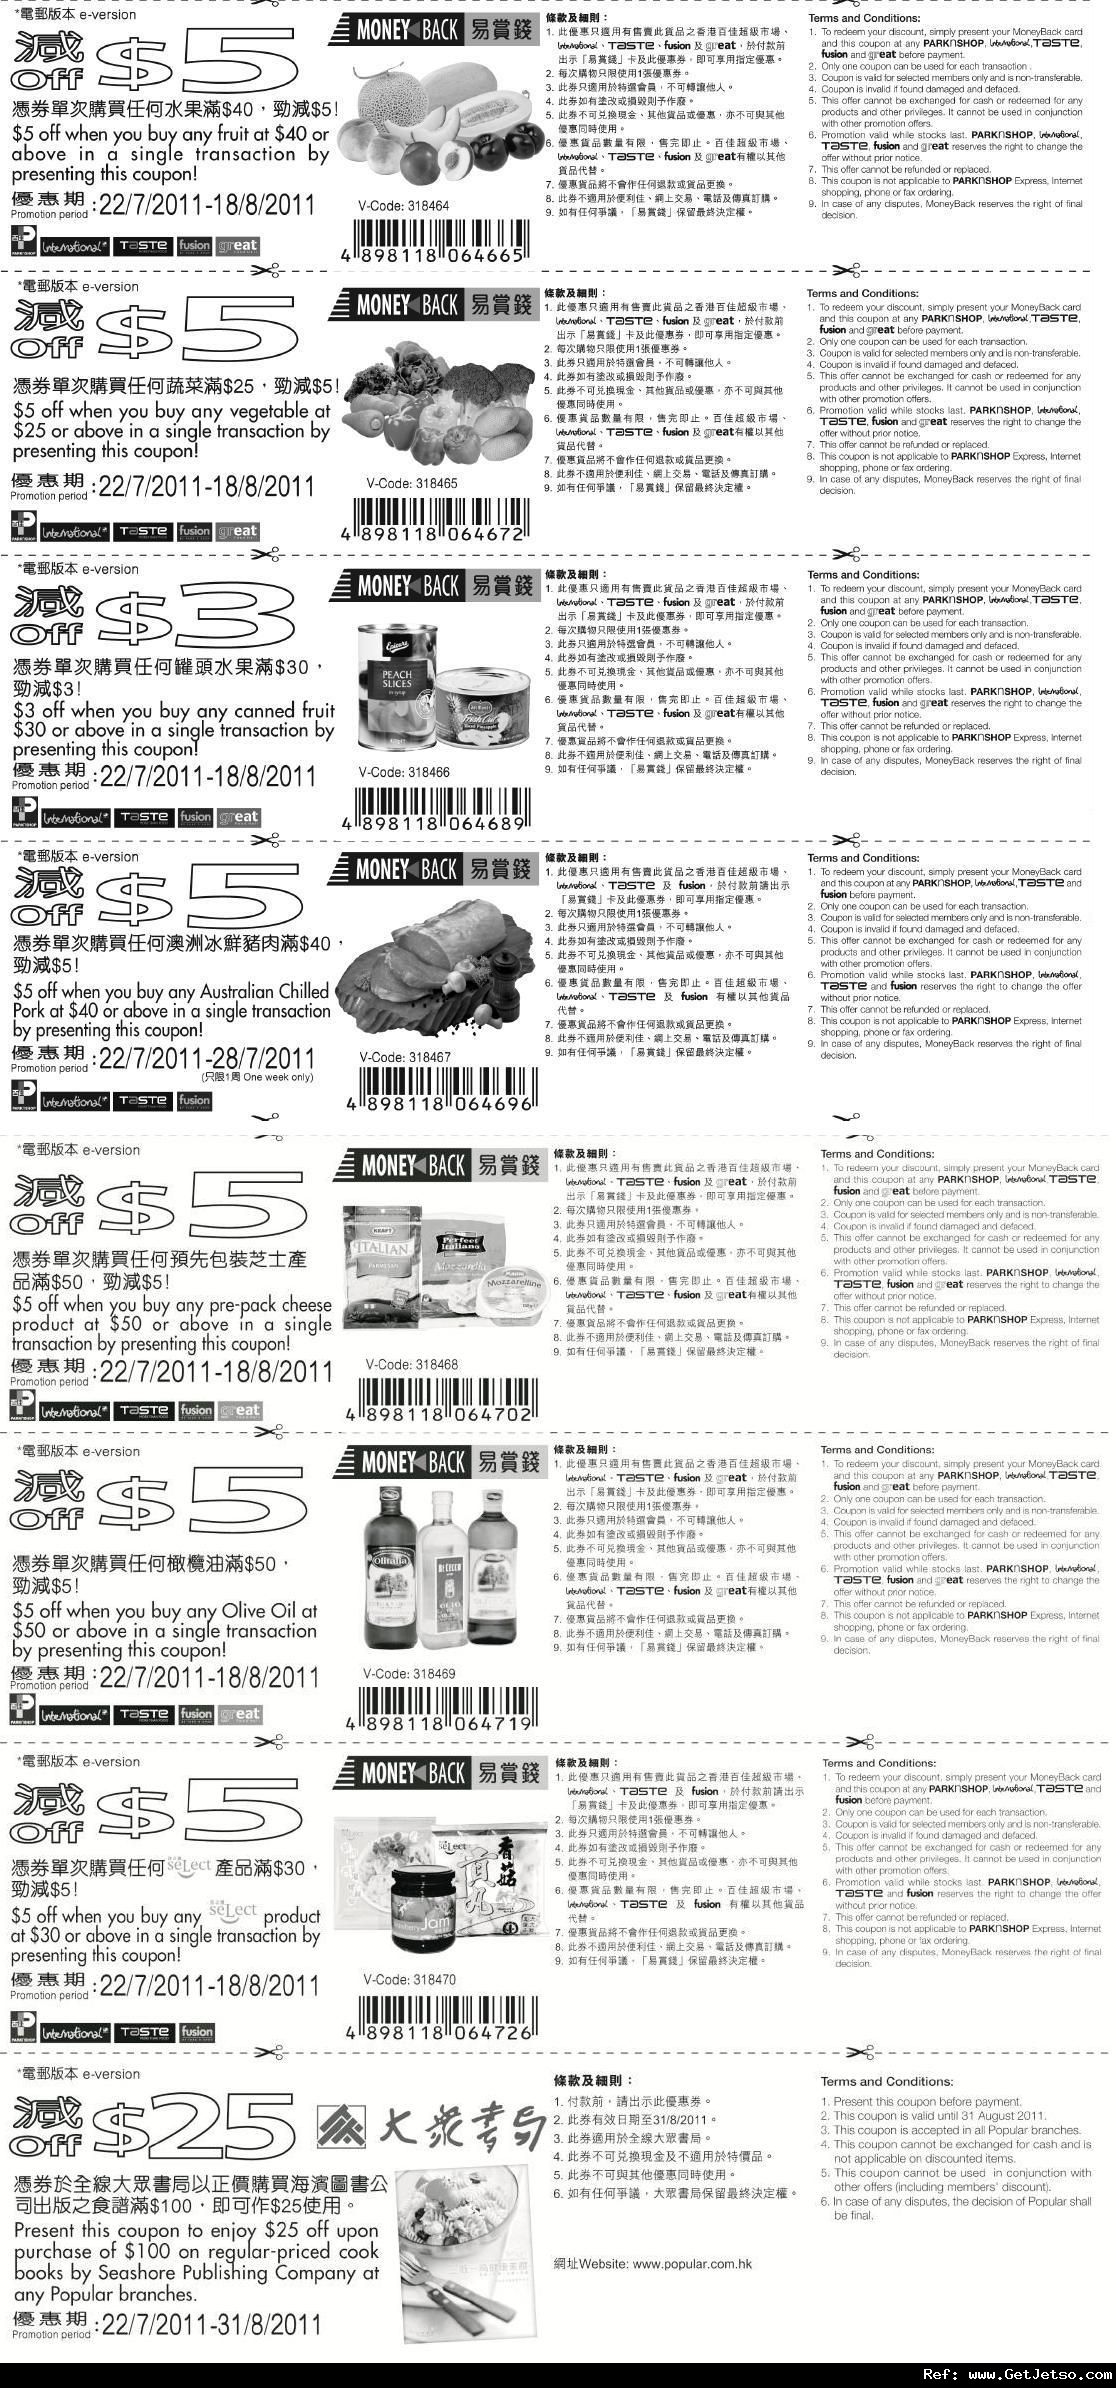 百佳超級市場易賞錢電子優惠券(至11年8月31日)圖片1